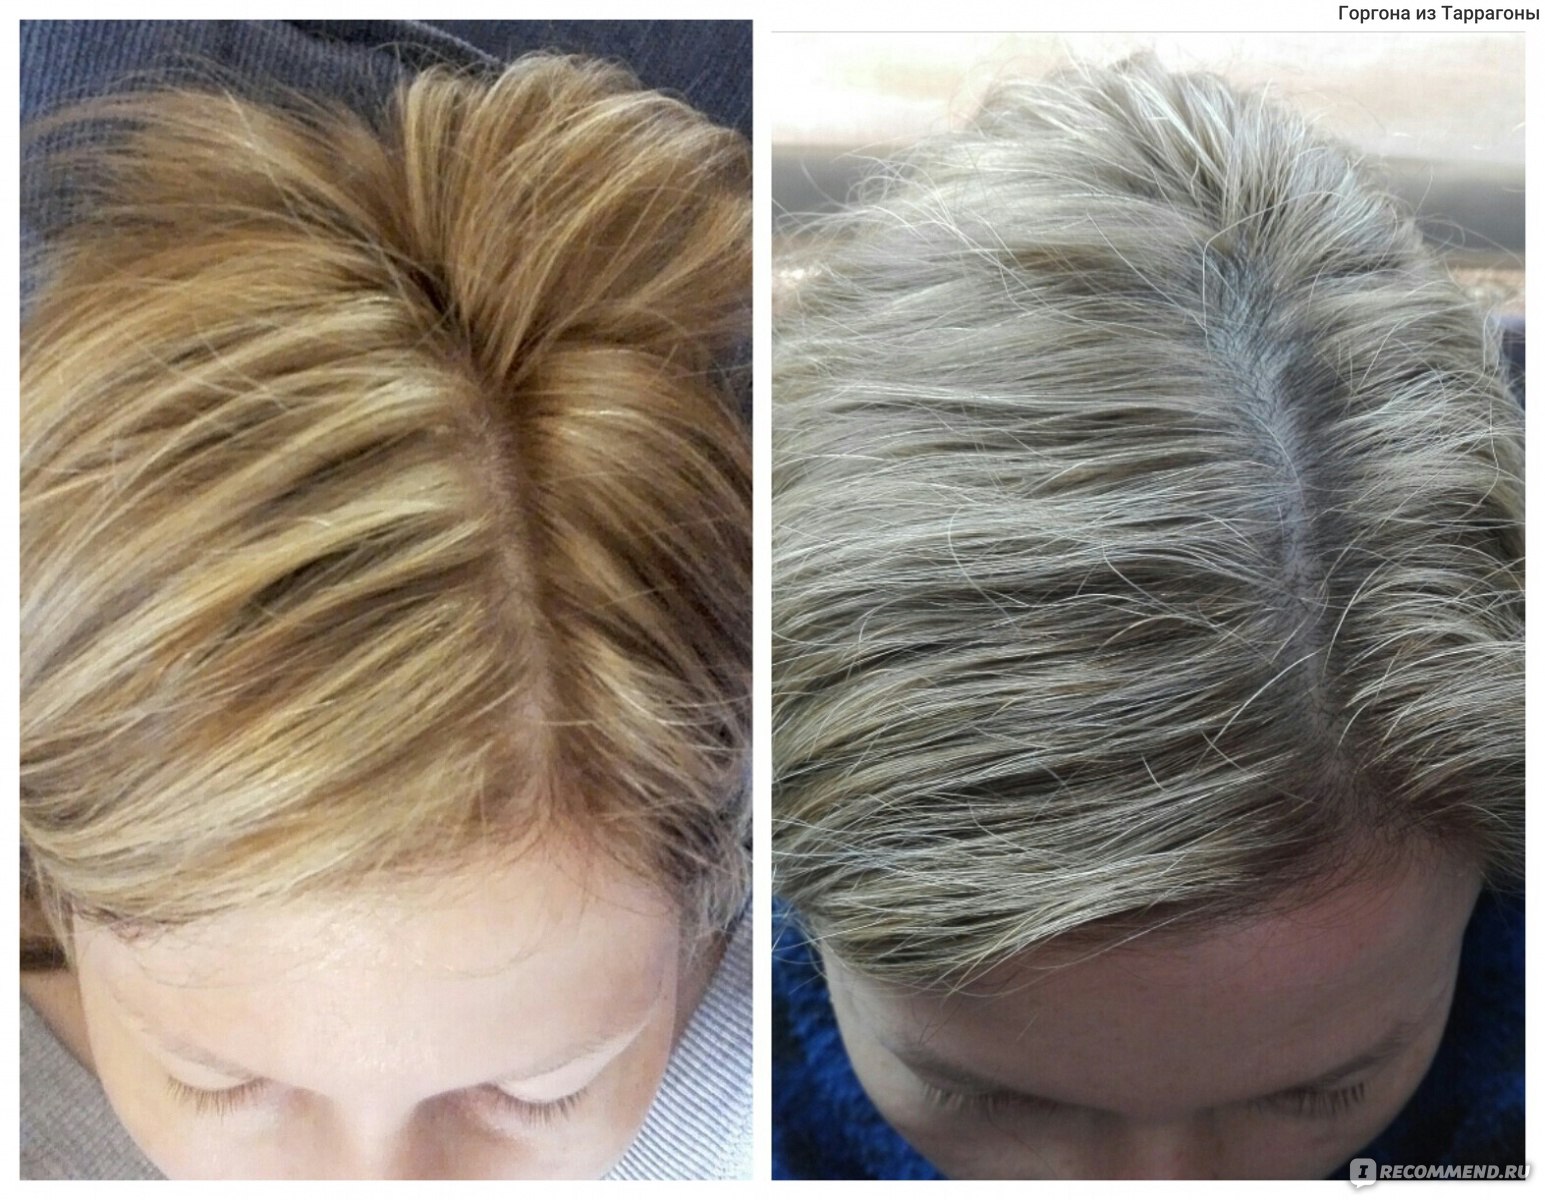 тонирование волос после осветления фото оттенки